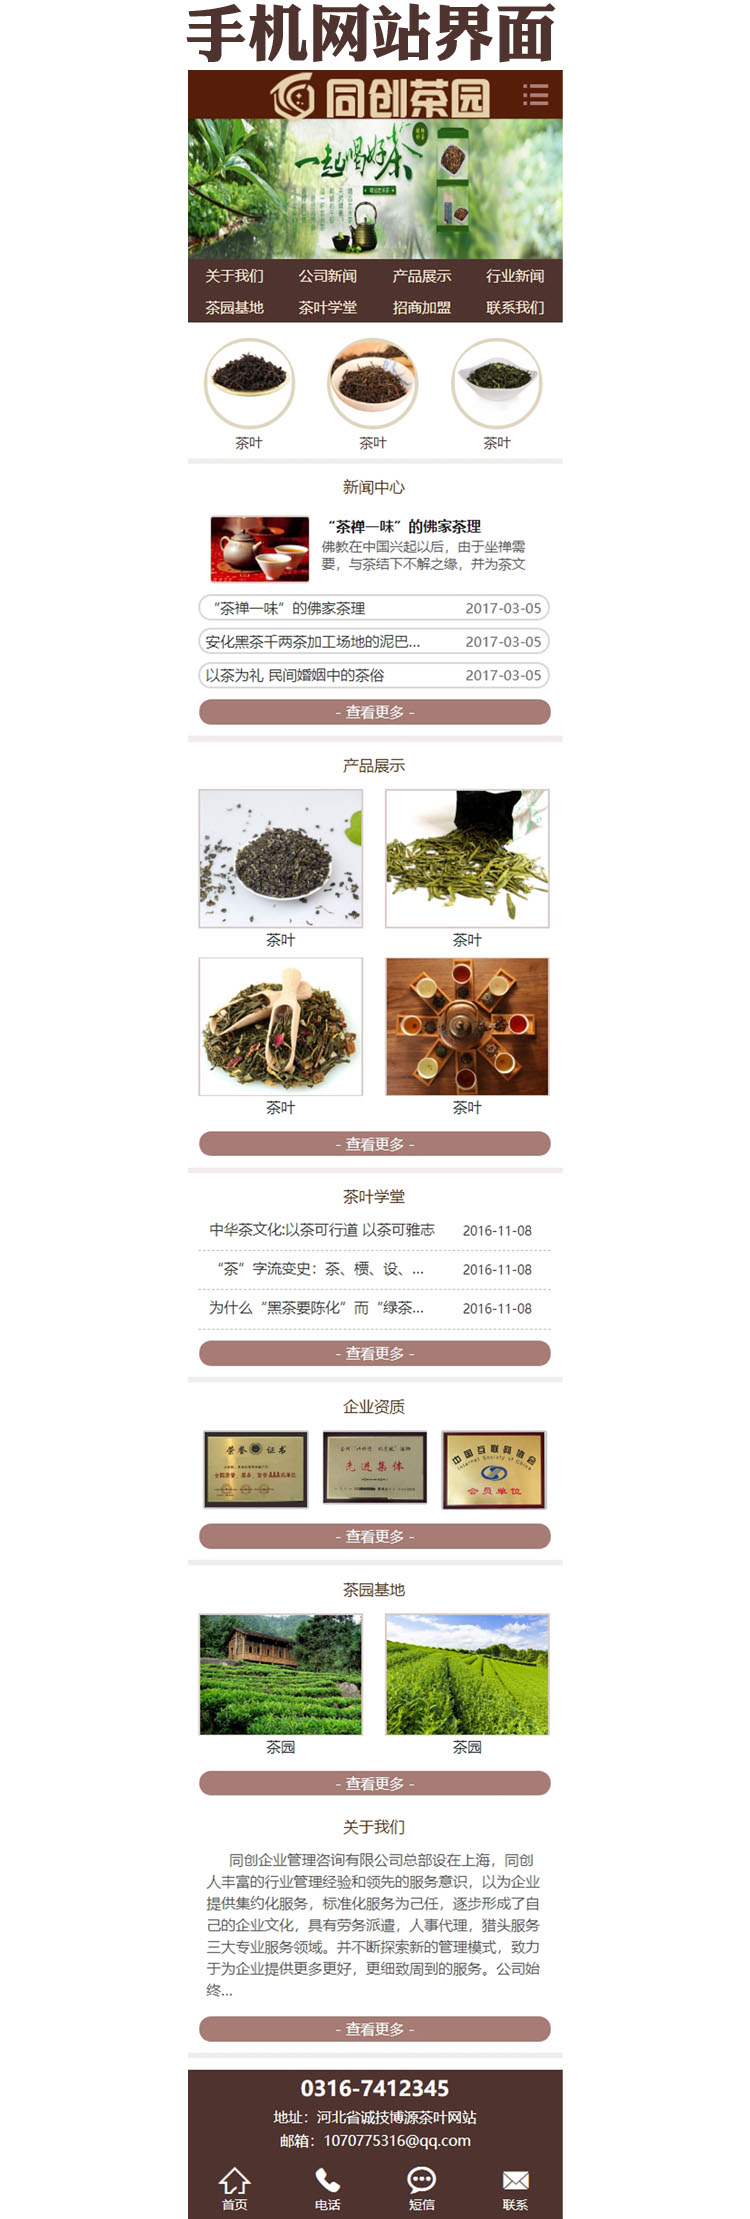 茶叶茶具网站源代码程序-XX011-3